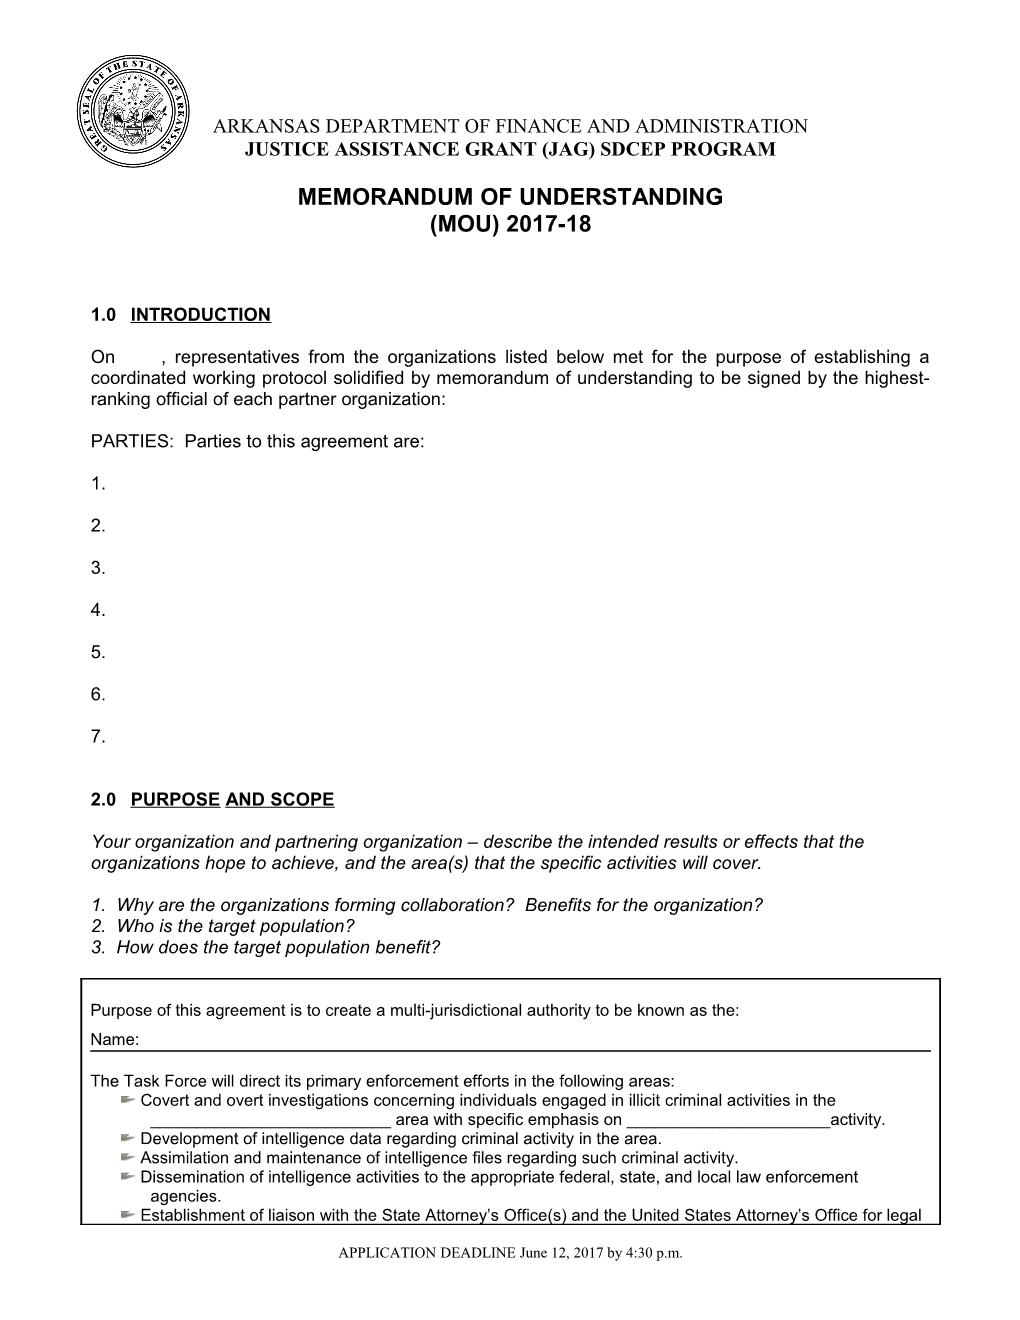 JAG-DCF Memorandum of Understanding